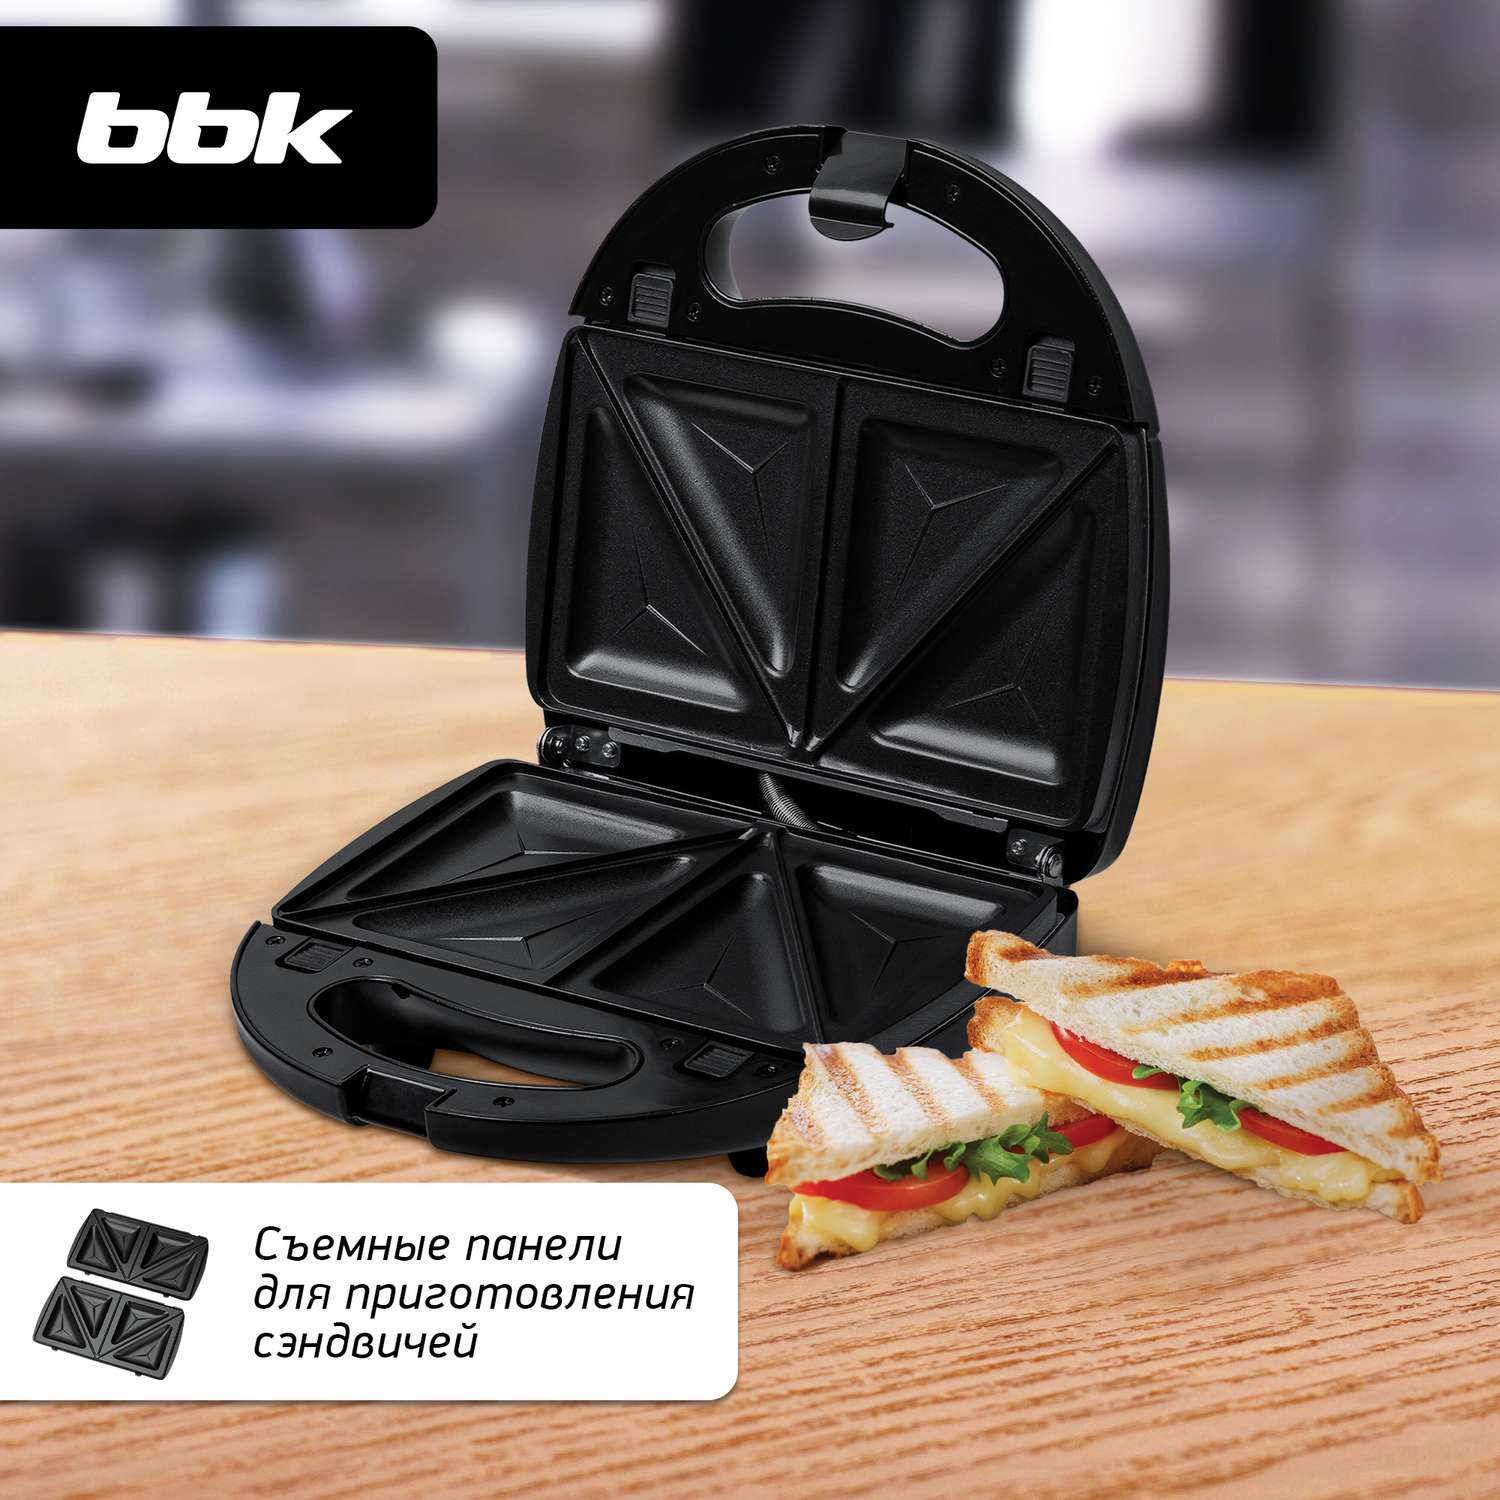 Сэндвичница BBK ES028 черная мощность 790 Вт съемные панели в комплекте - фото 6